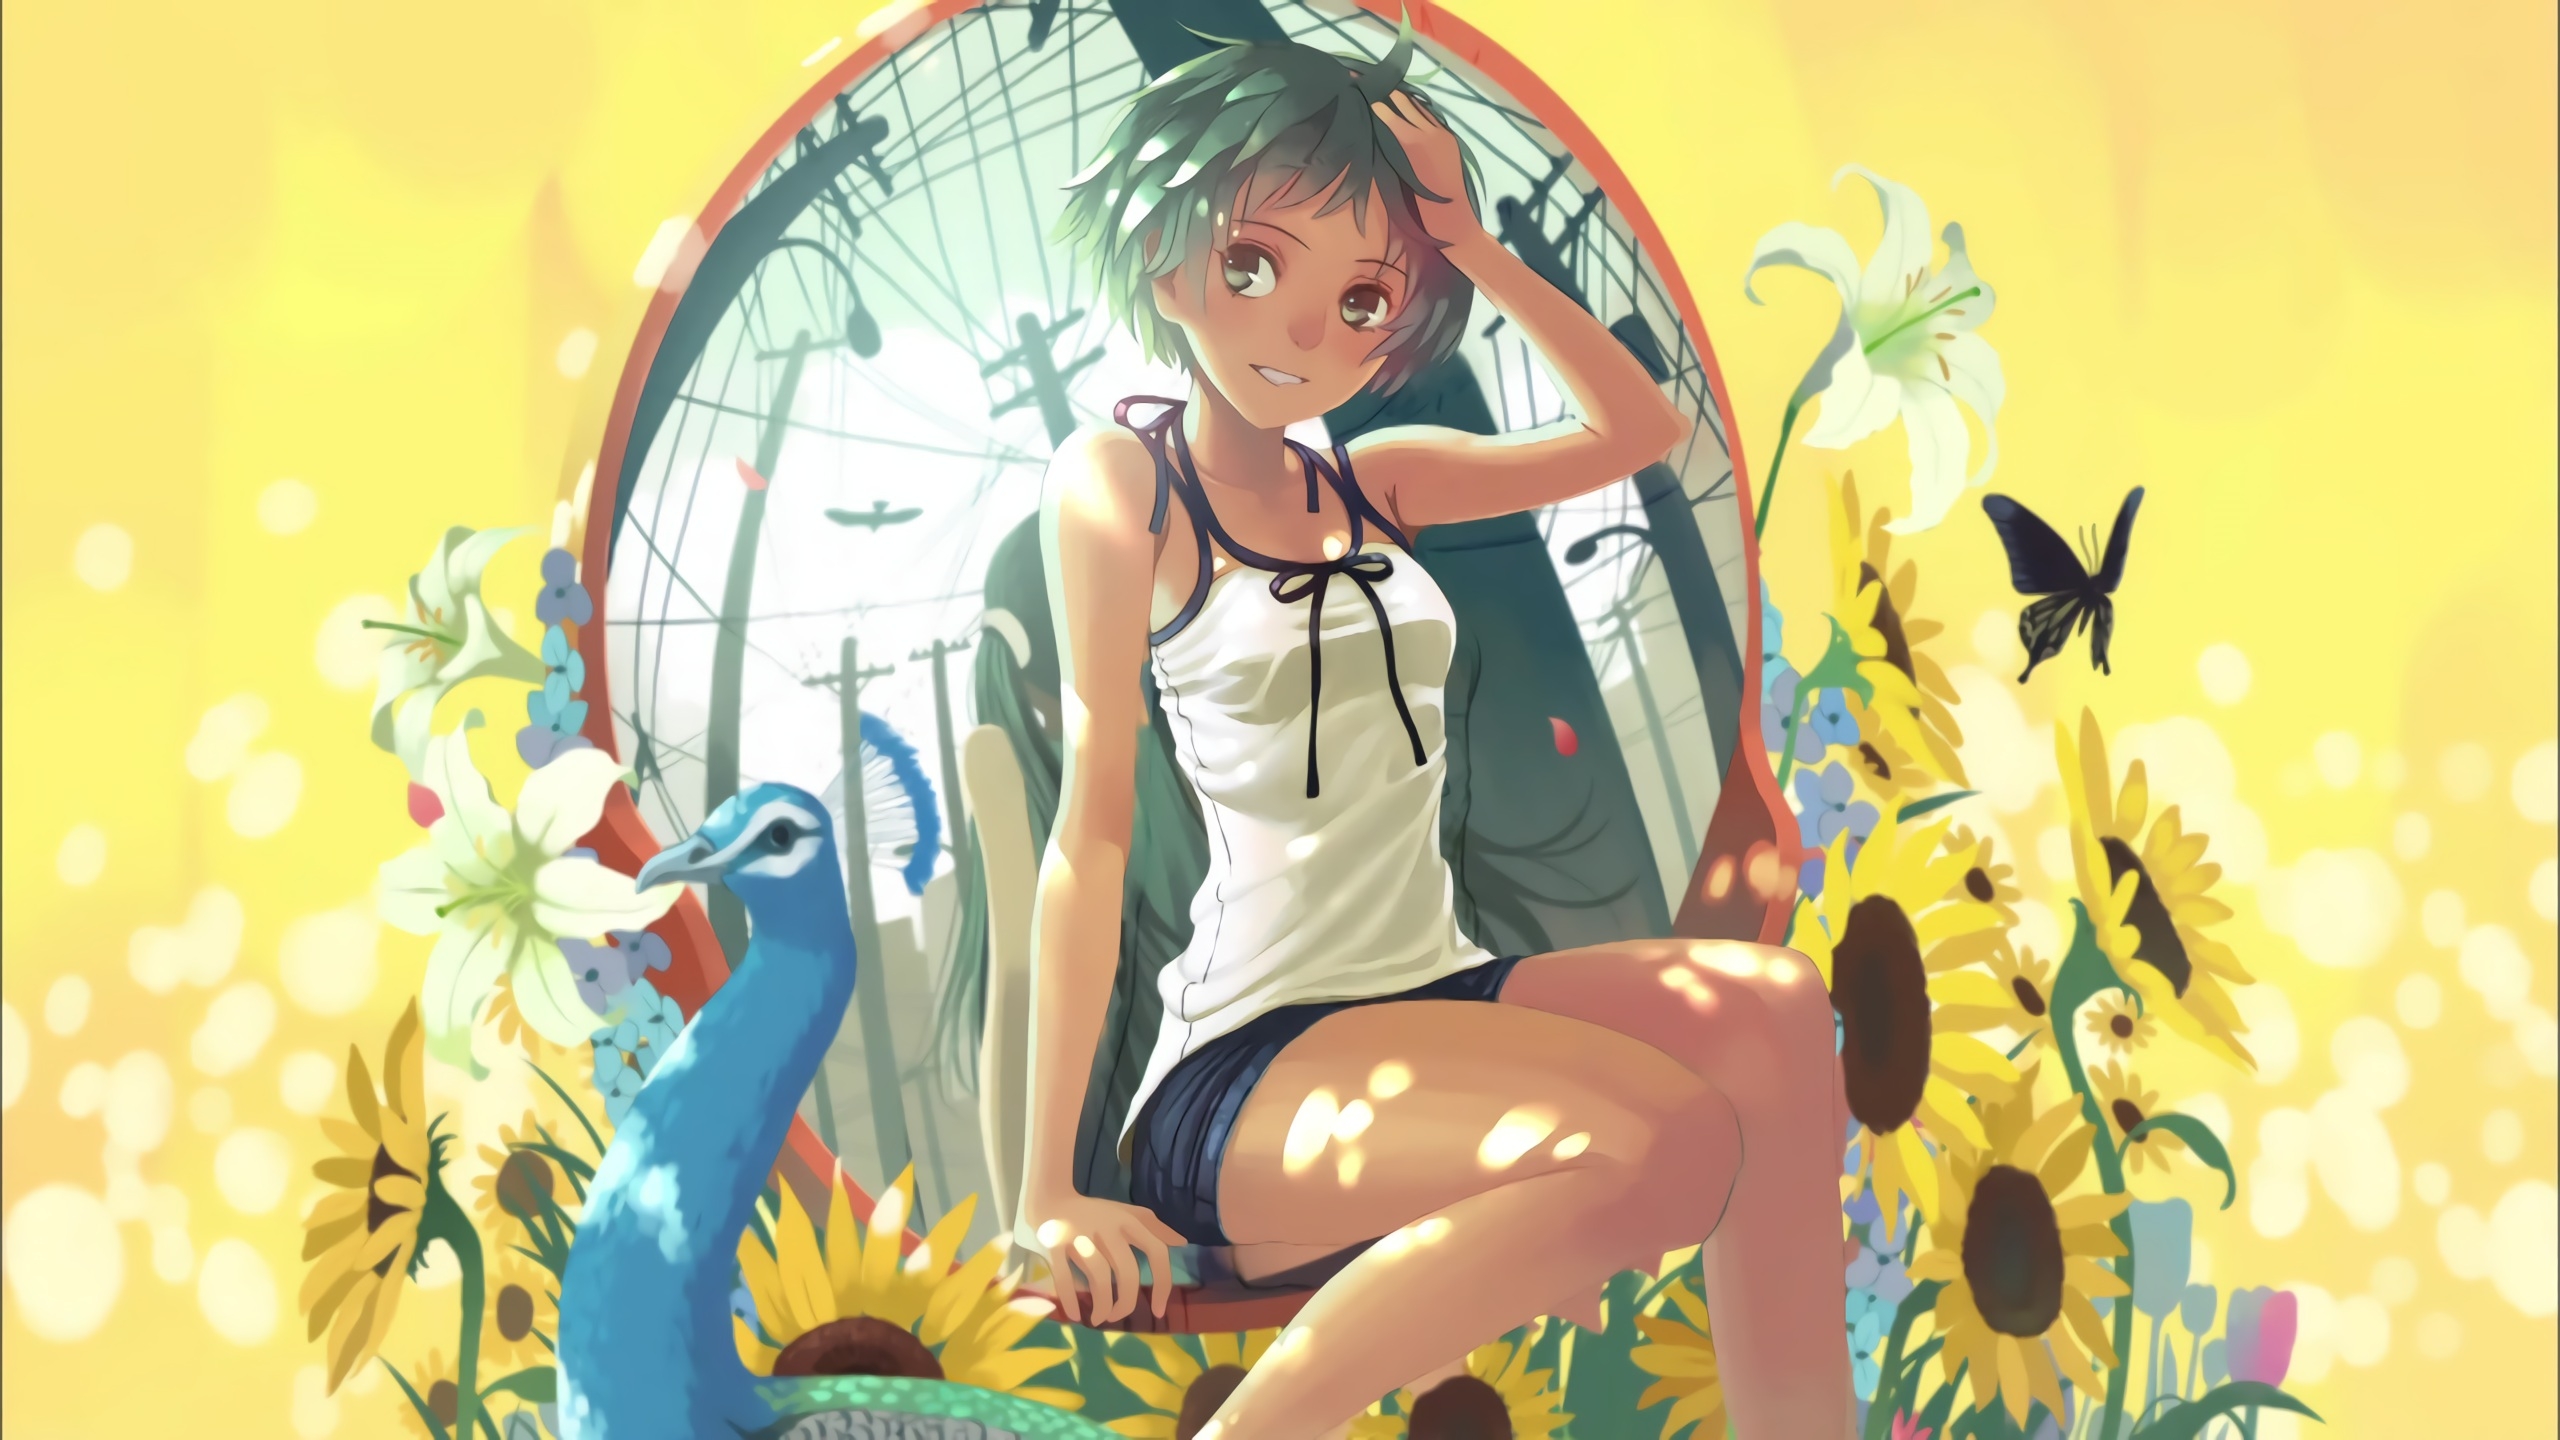 Download 2560x1440 Monogatari Series, Anime Girl, Sunflowers, Summer